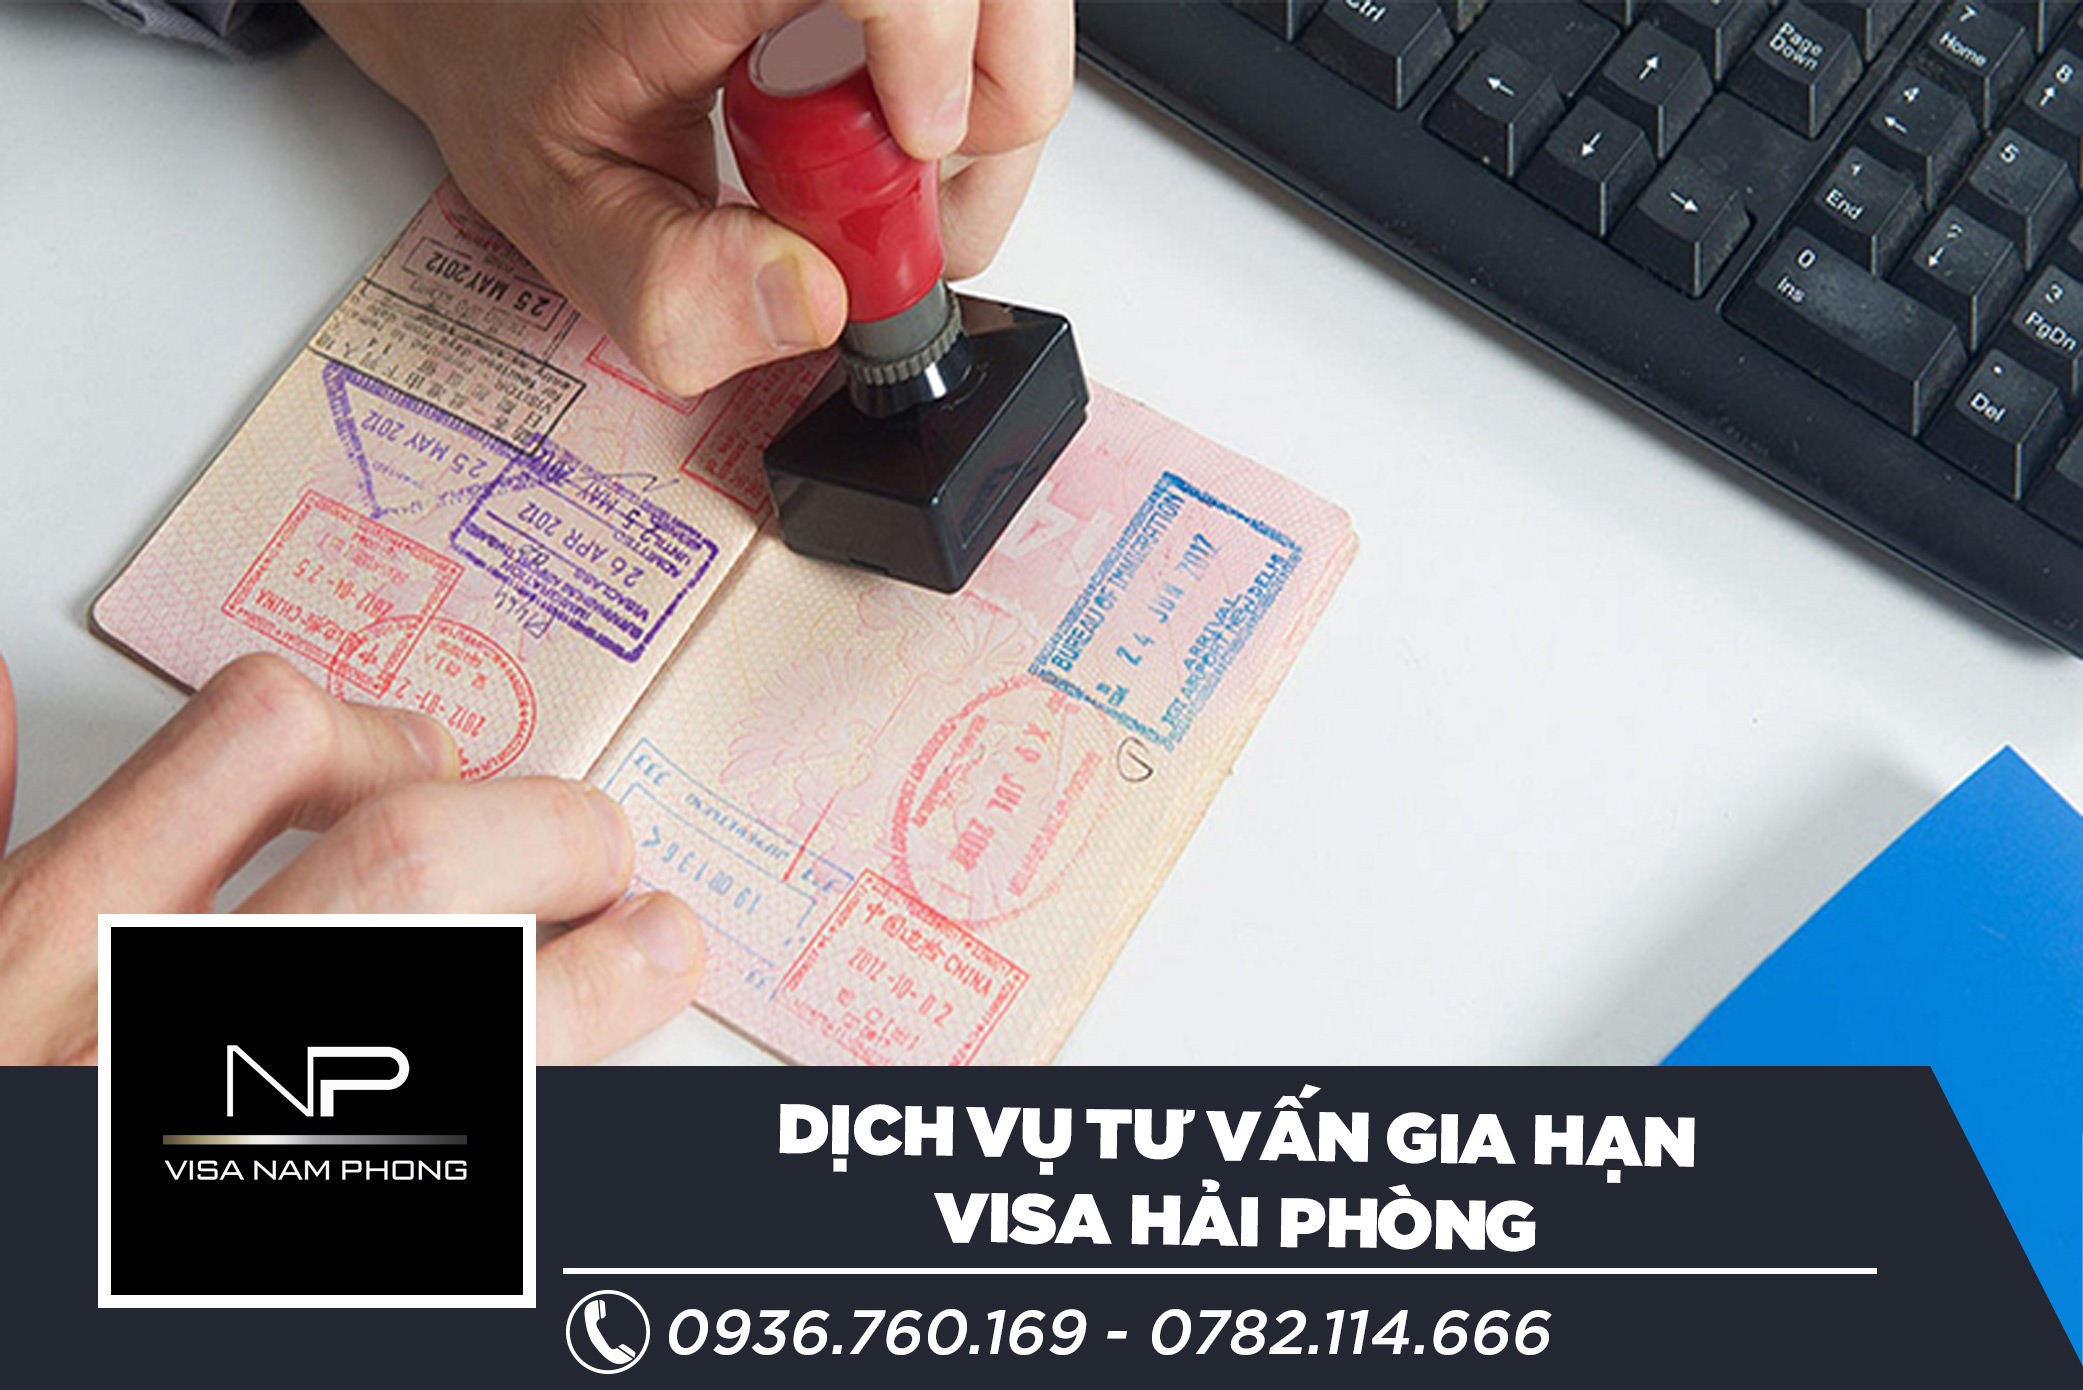 Dịch vụ tư vấn gia hạn visa hải phòng